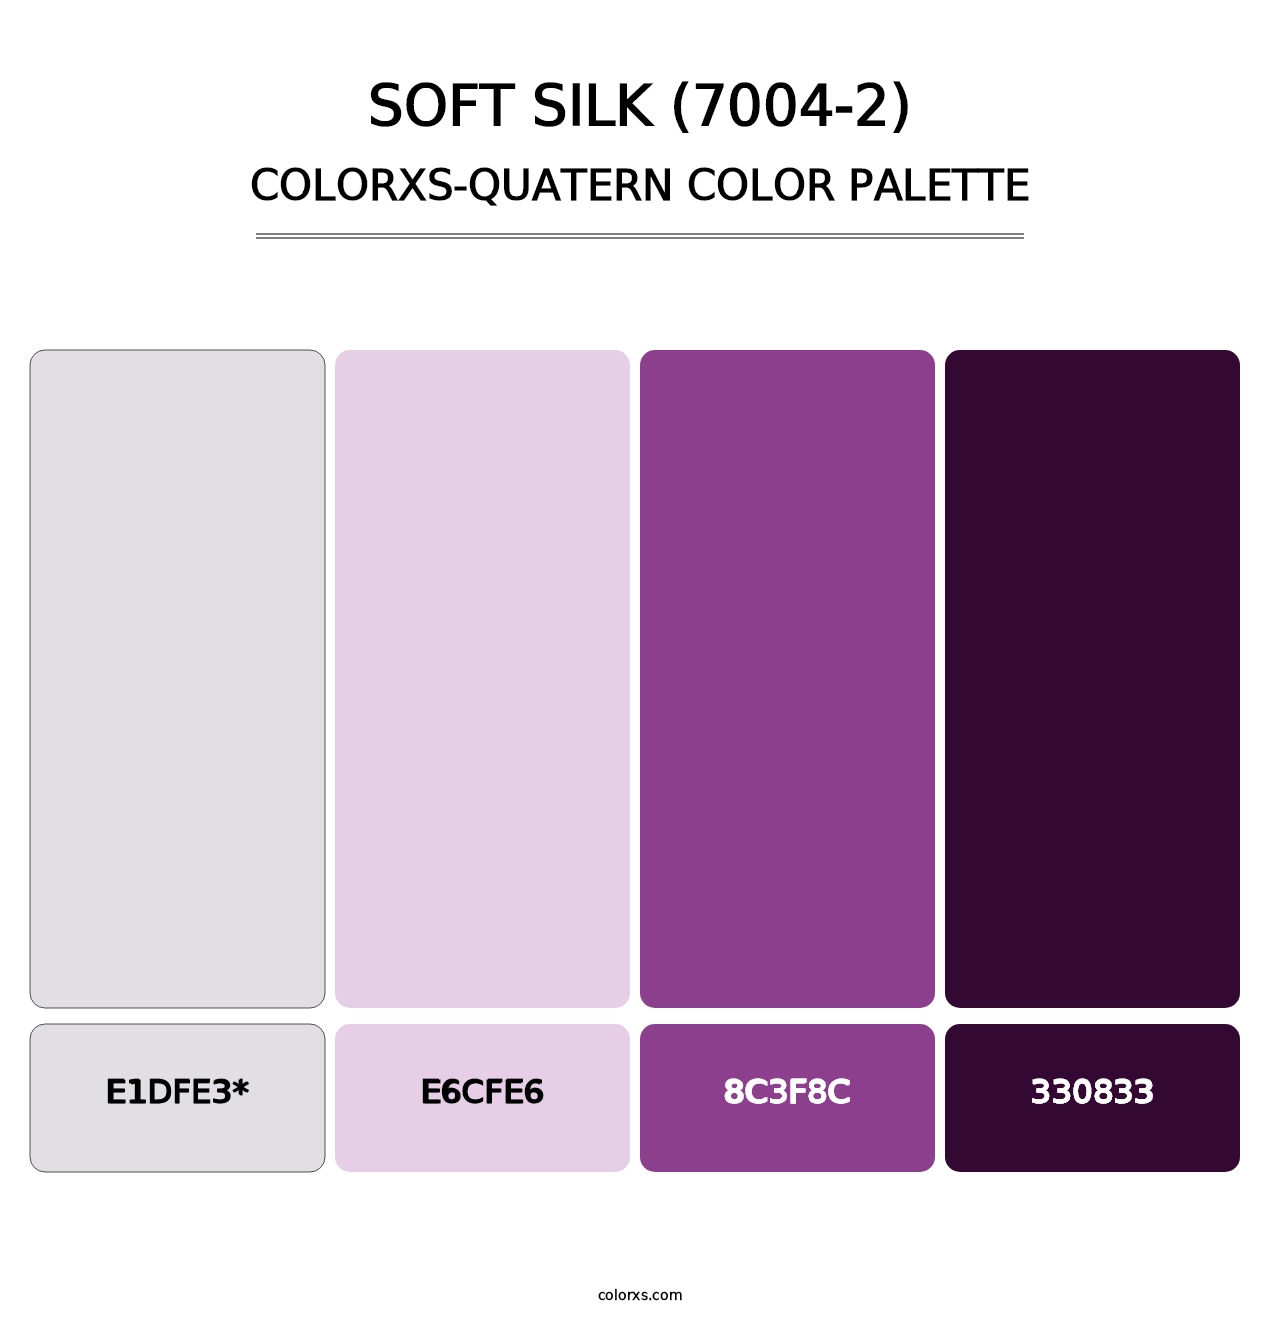 Soft Silk (7004-2) - Colorxs Quatern Palette